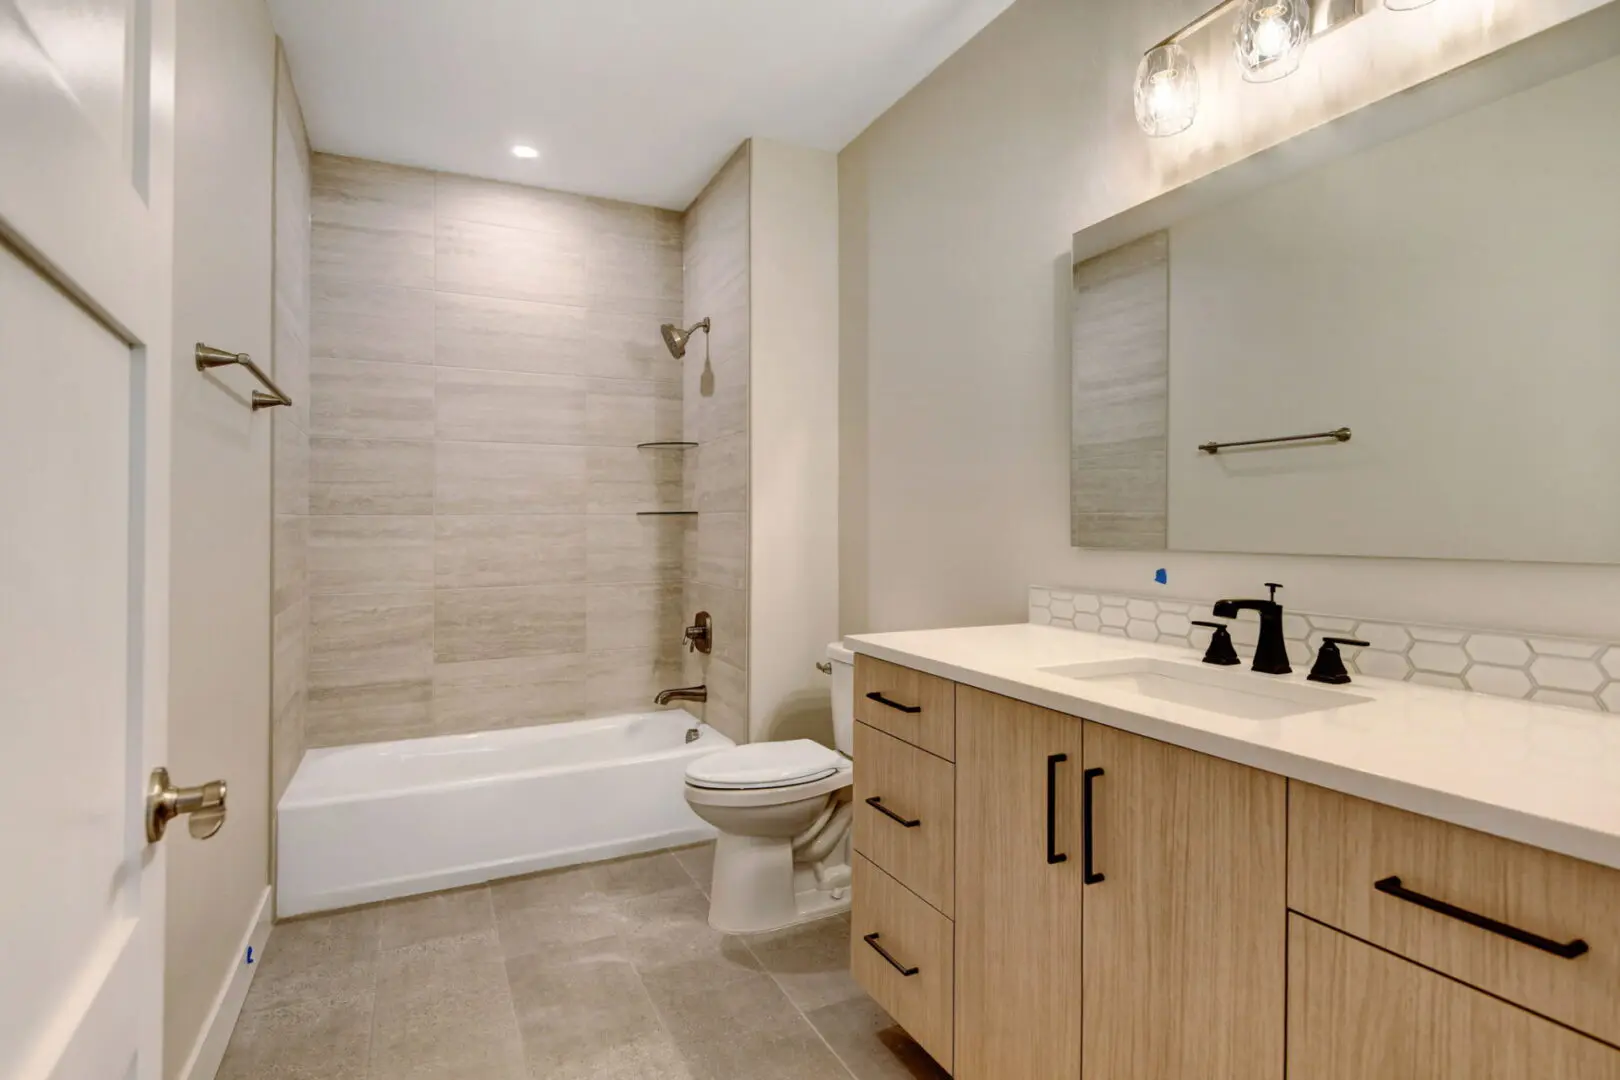 A modern bathroom with sink and bathtub